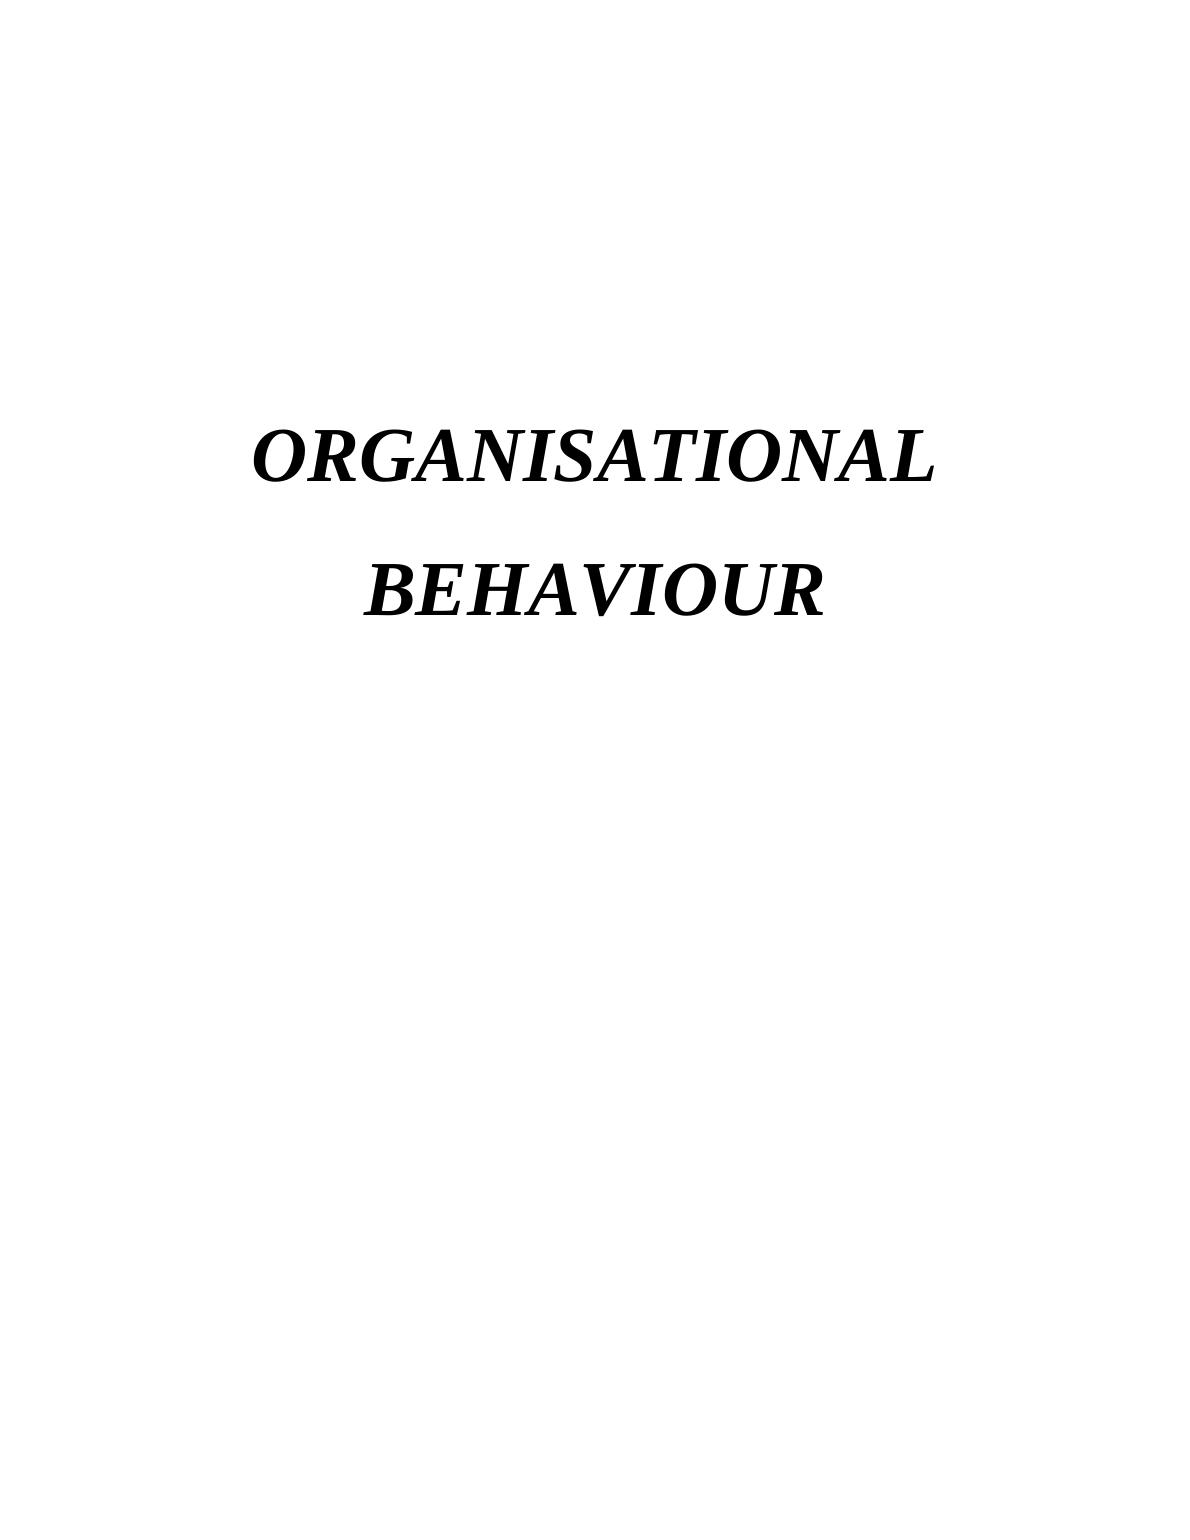 Organizational Behavior (OB)_1